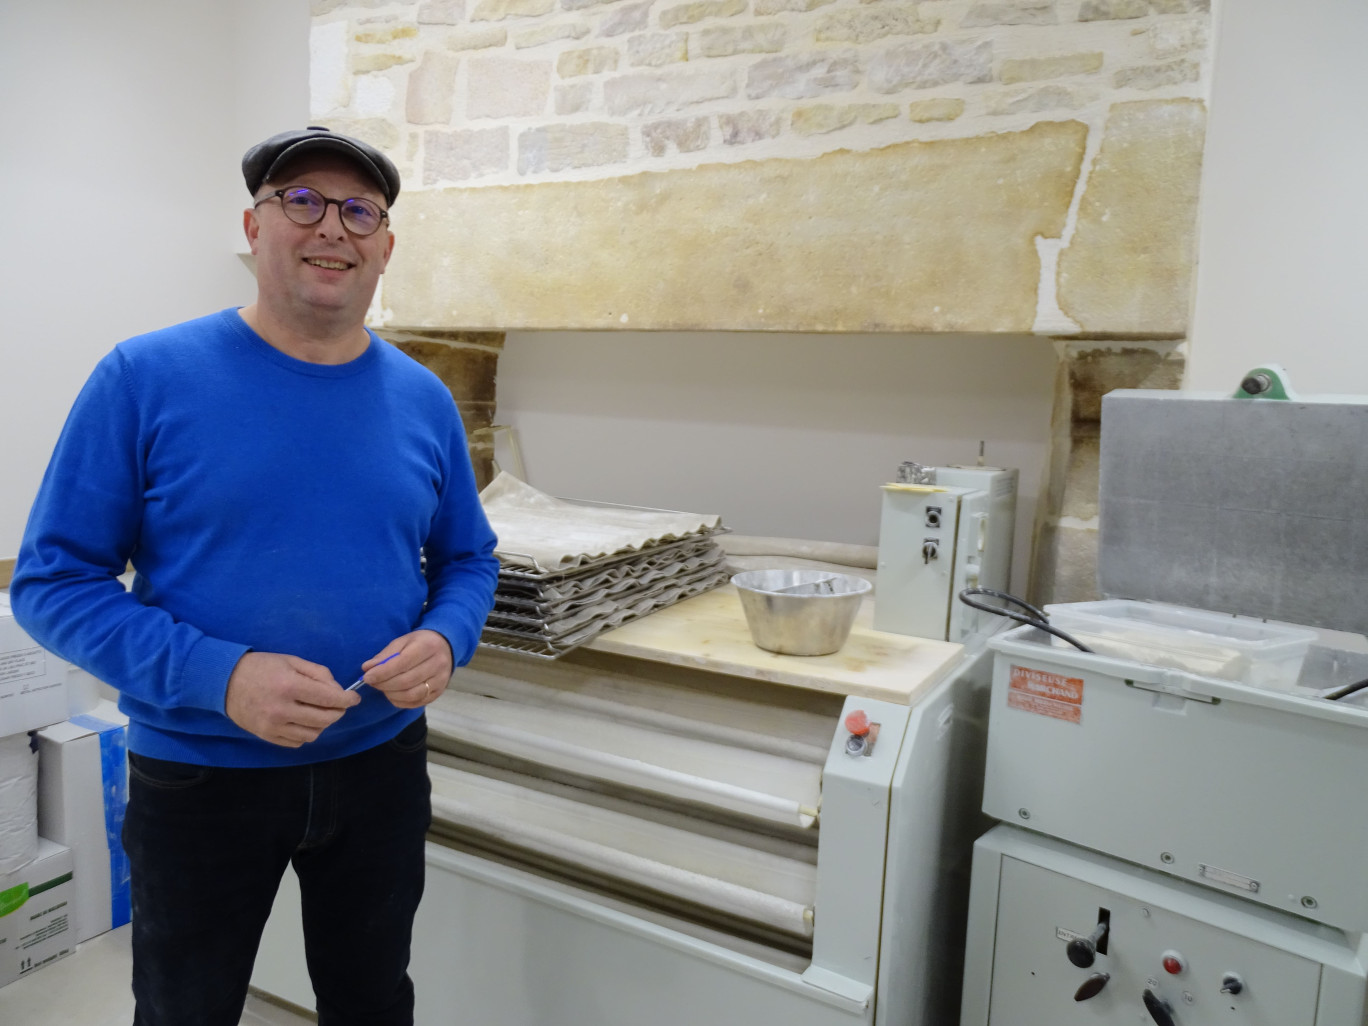 Jérôme Bruet a repris l’une des plus anciennes boulangeries de Dijon, la boulangerie Buffon, dans laquelle il finalise les travaux pour une ouverture prévue le 3 janvier 2023. (© Aletheia Press / Nadège Hubert)